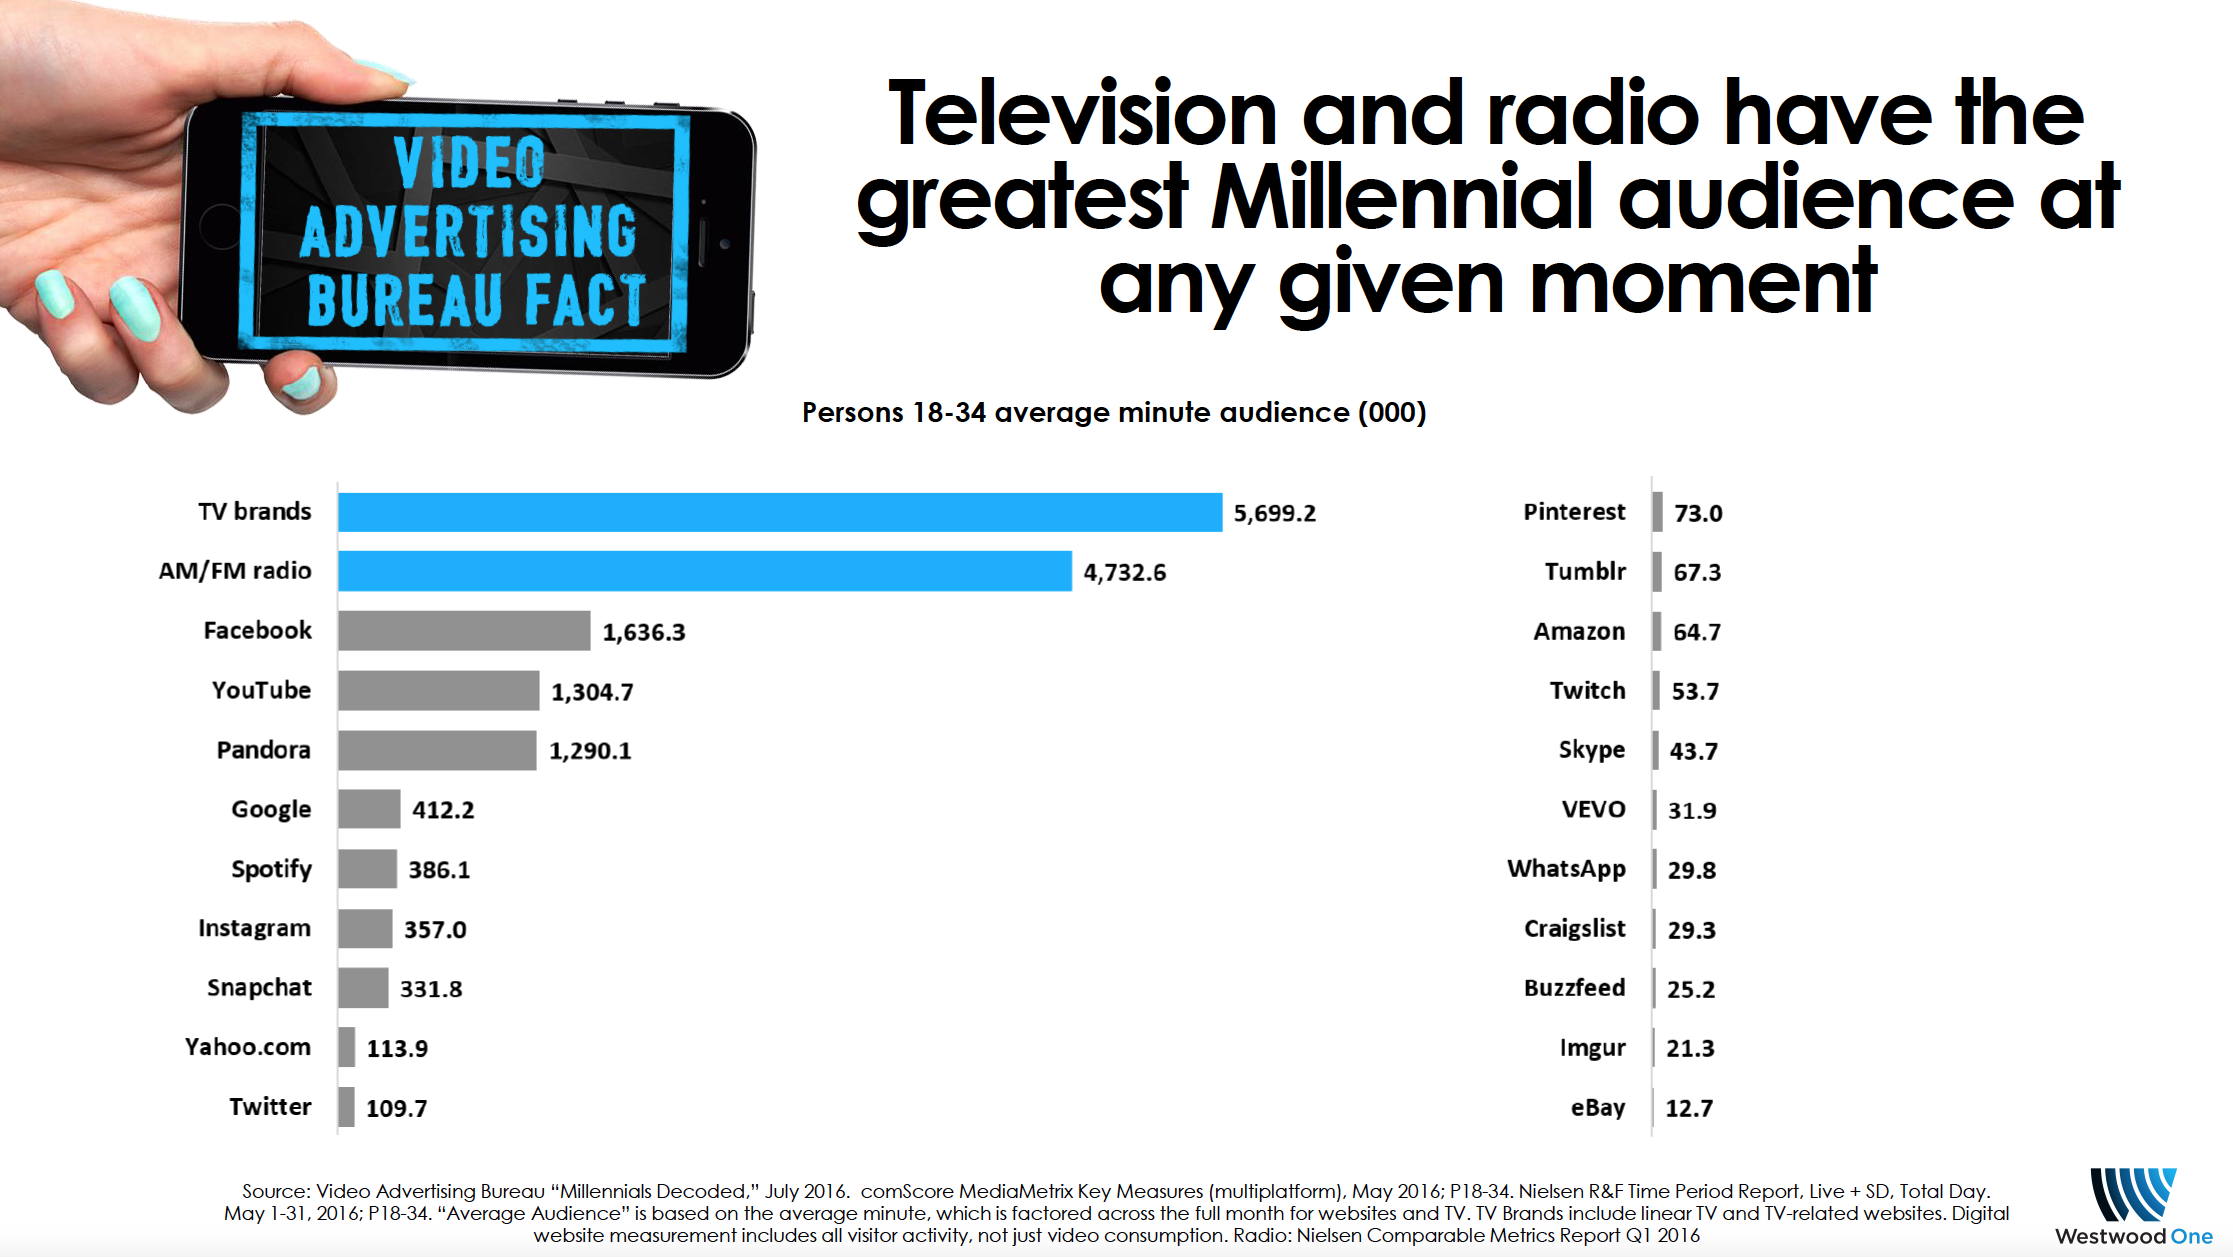 Nielsen démontre la puissance de la radio aux USA